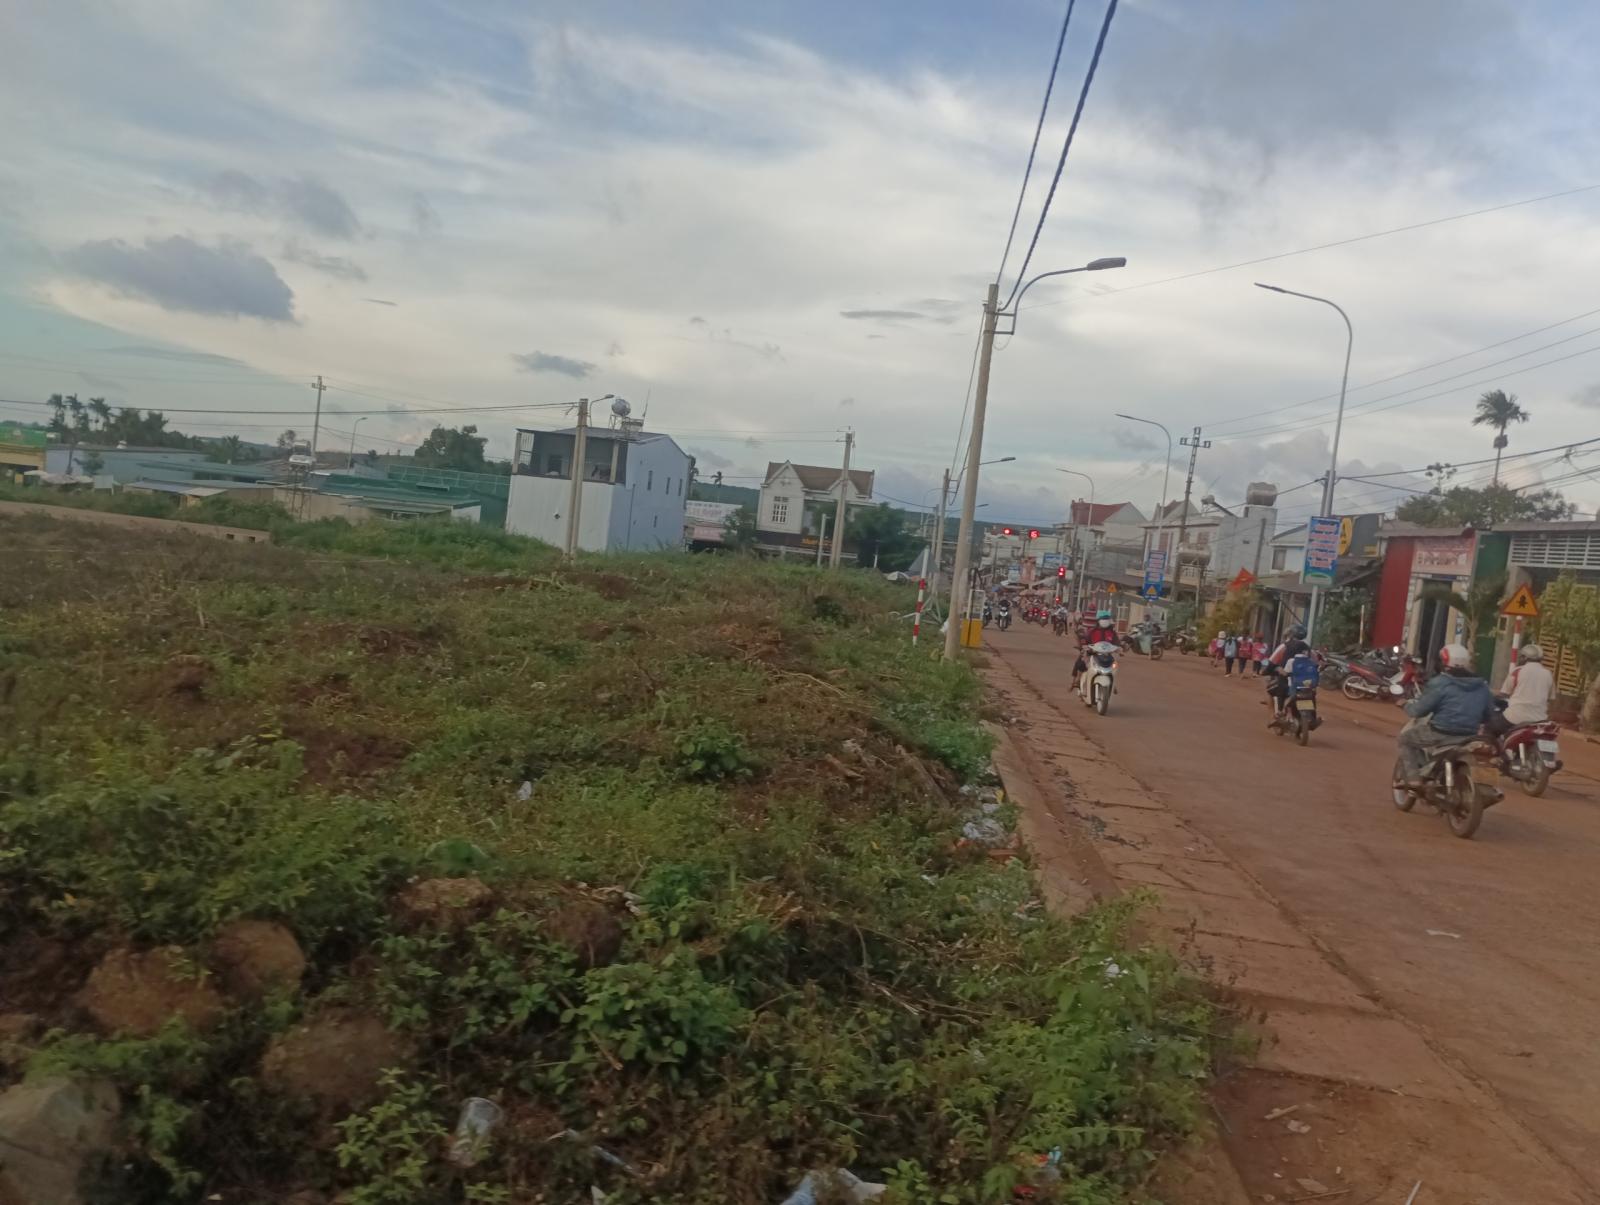 Pháp lý chuẩn chỉnh sổ đỏ từng nền - Đất nền trung tâm hành chính huyện Krông Năng, Đắk Lắk 